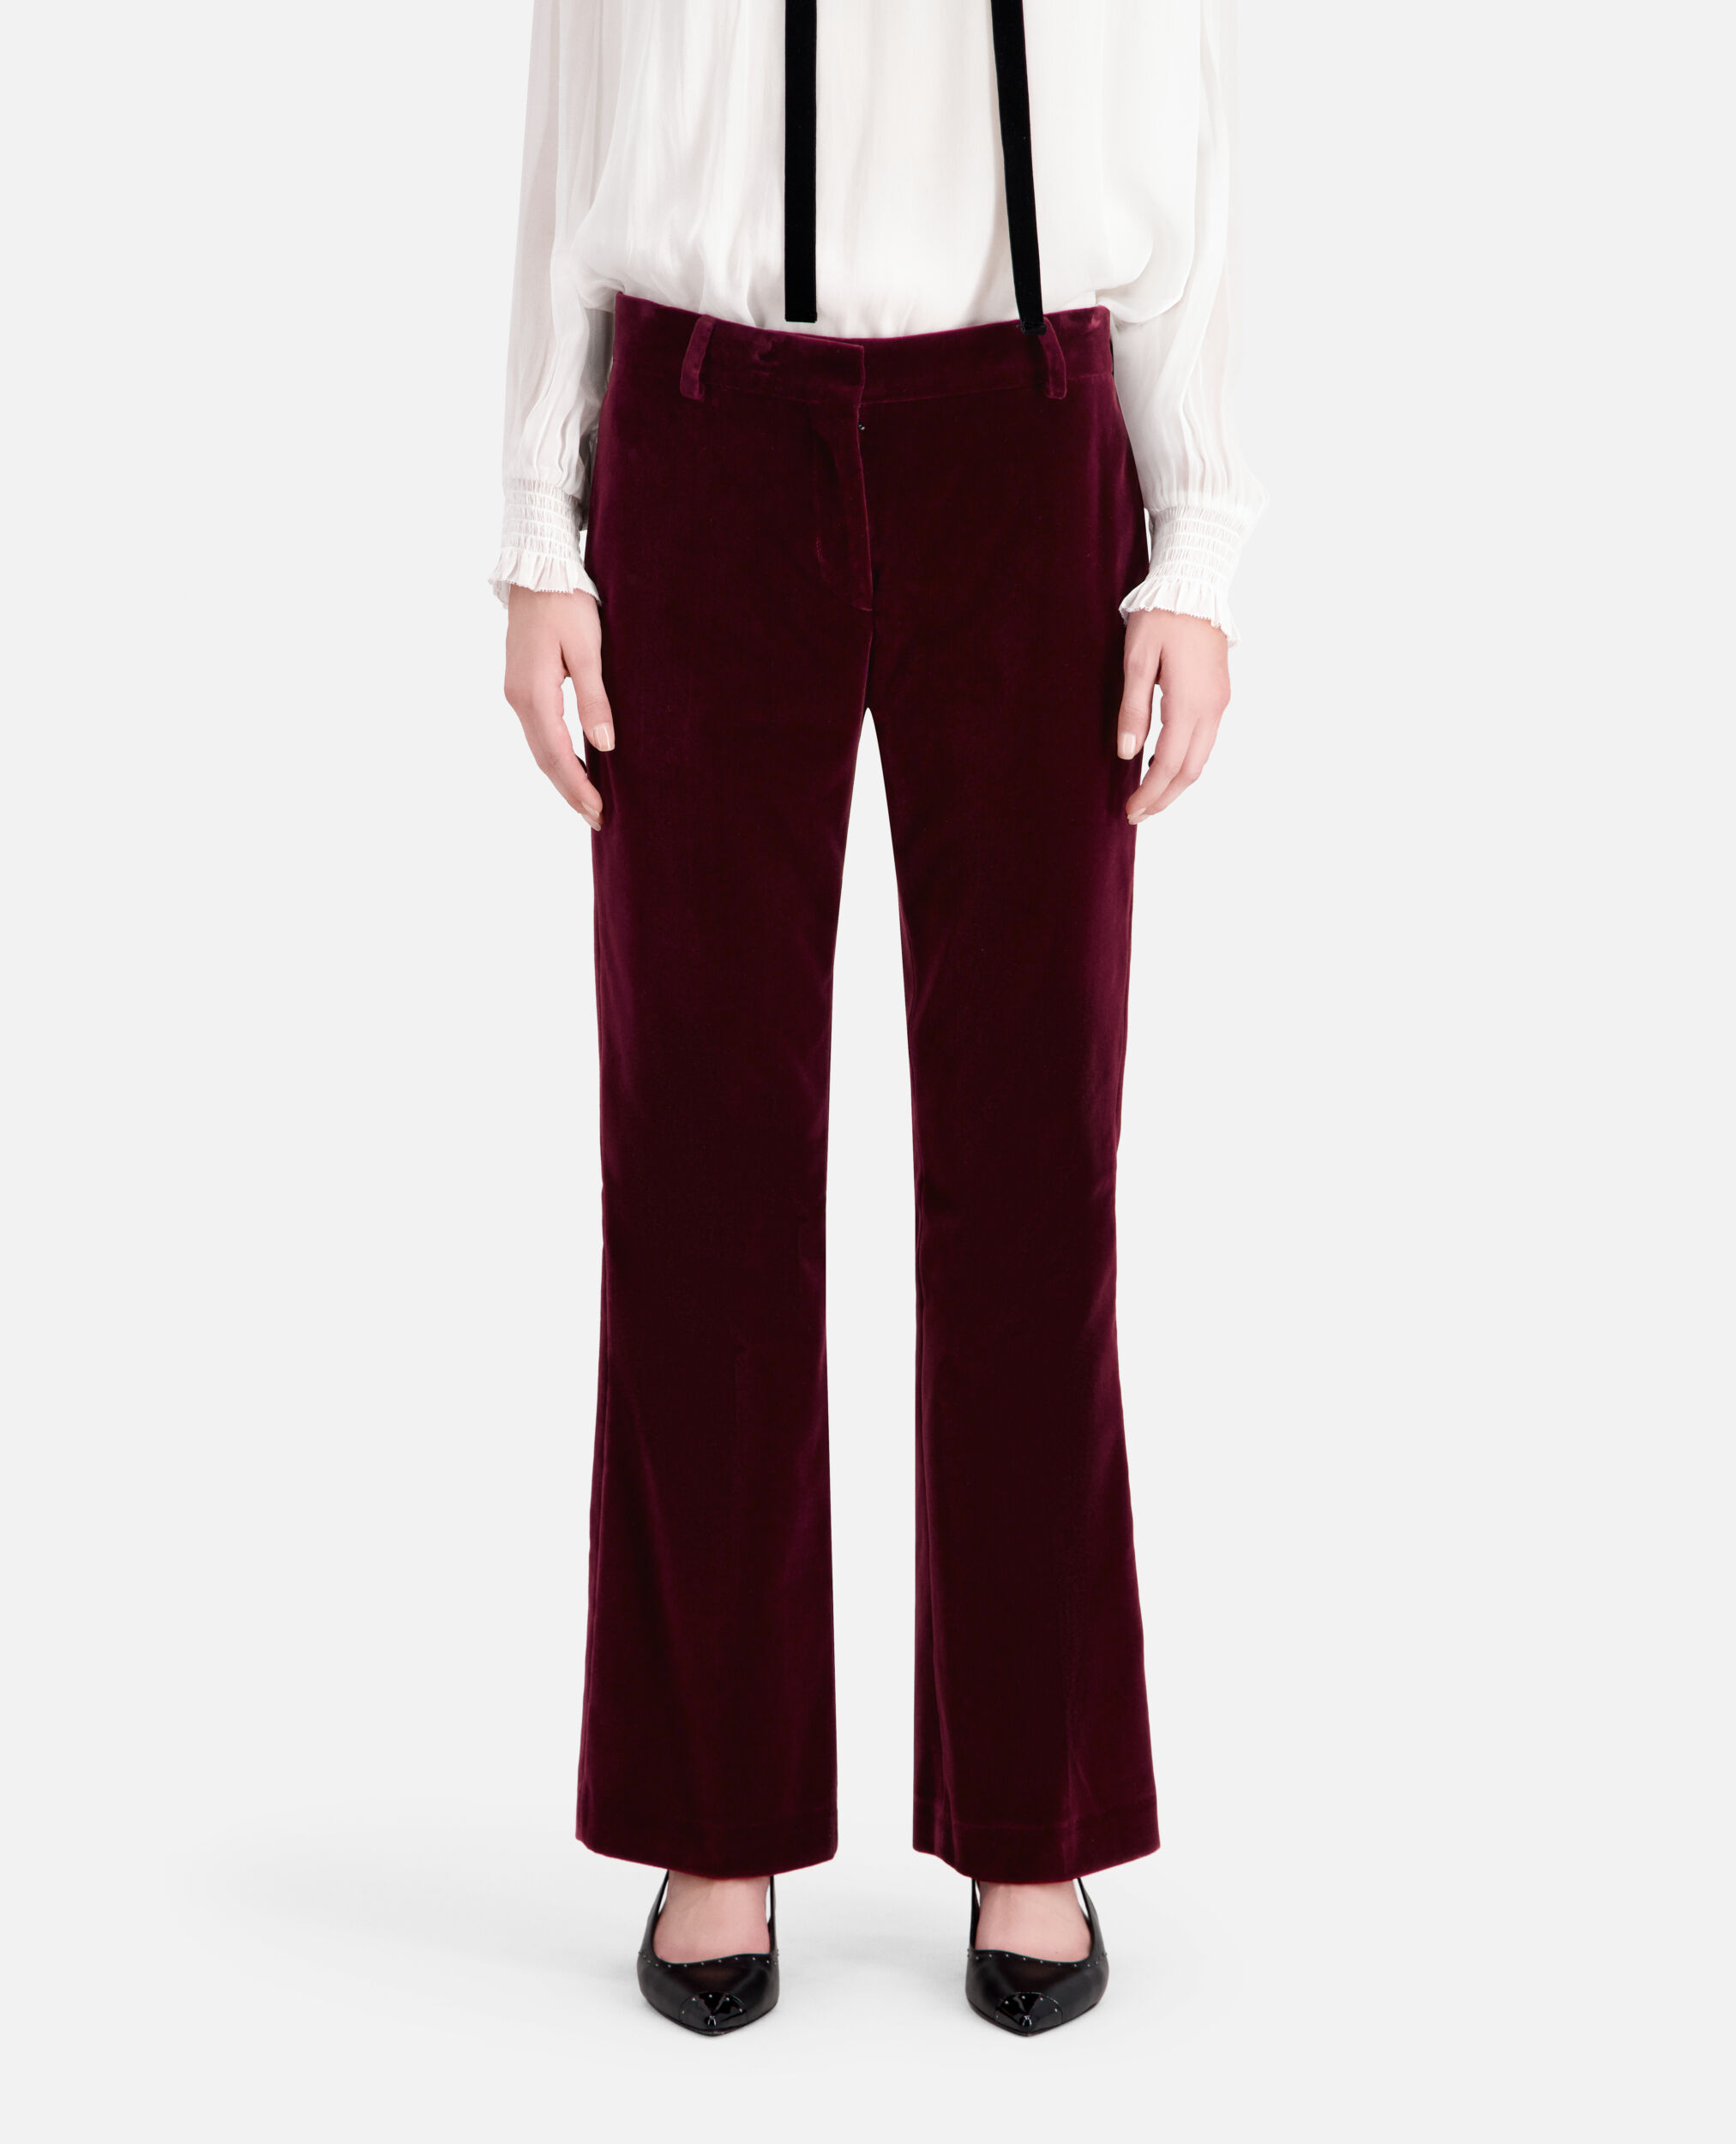 Pantalon tailleur bordeaux en velours, BURGUNDY, hi-res image number null